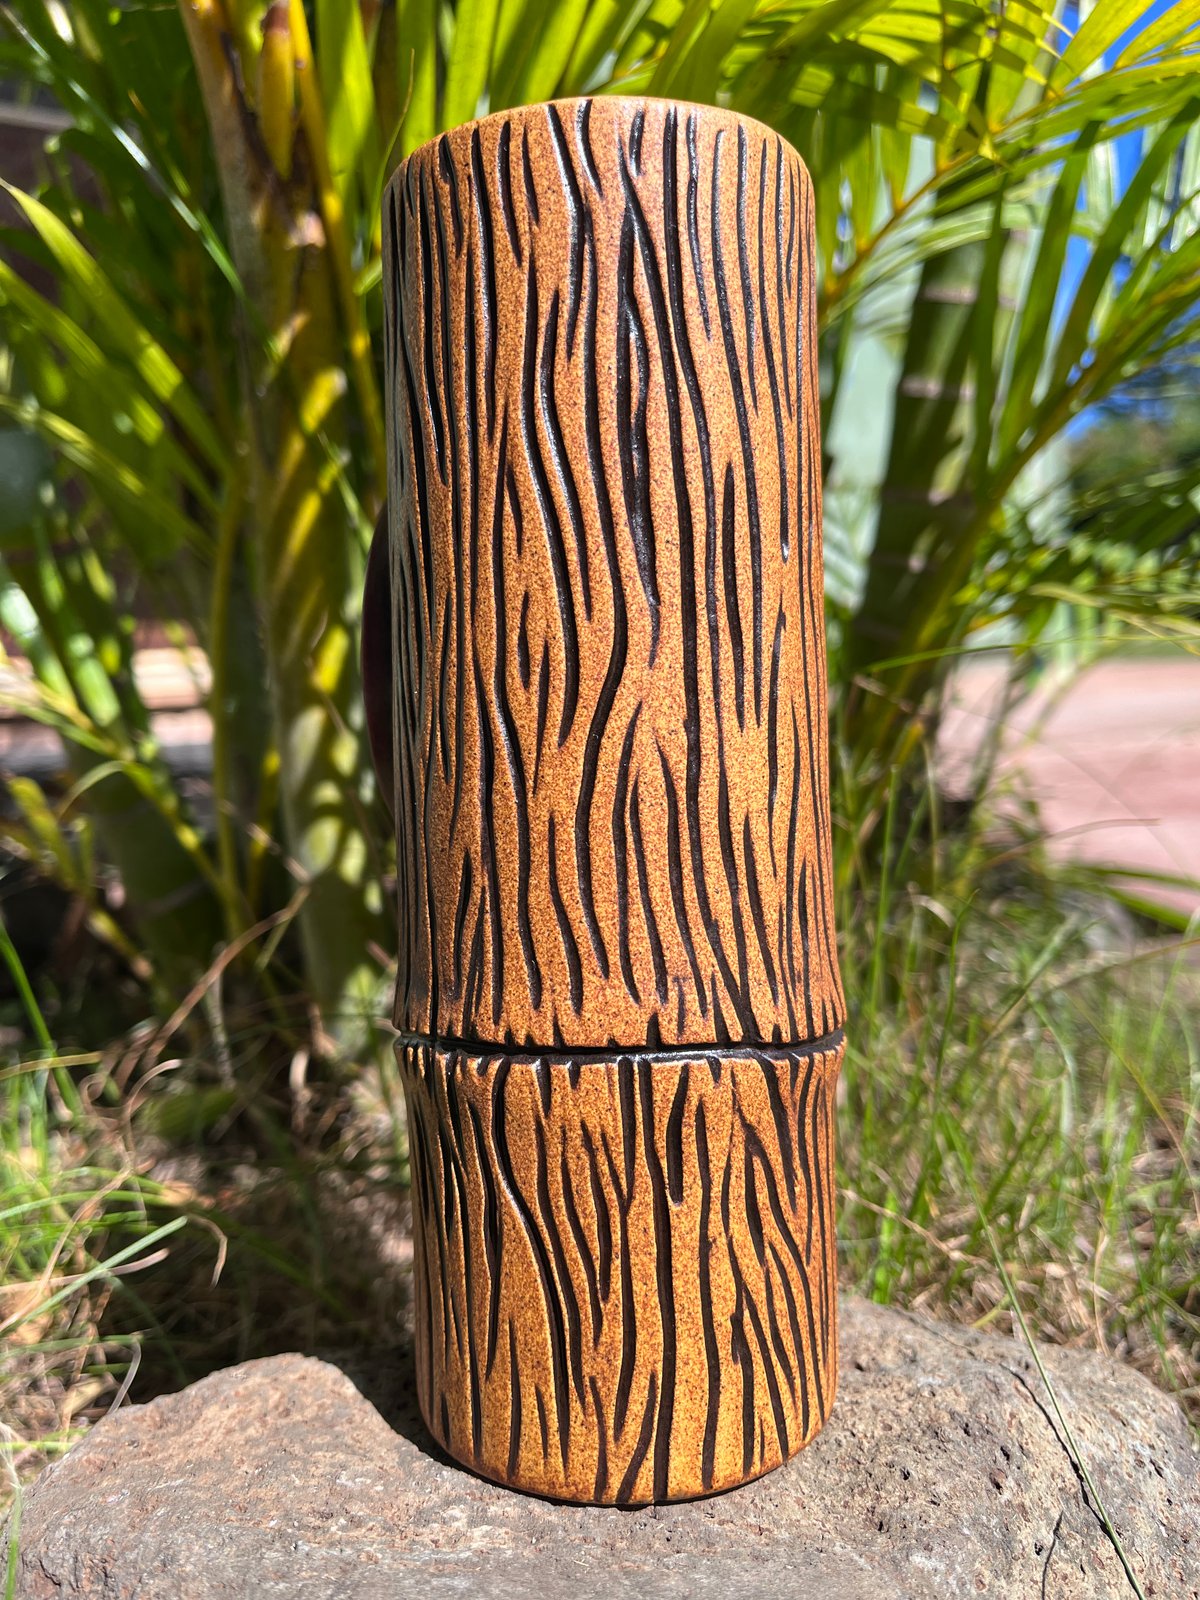 Image of Porthole To Paradise Tiki Mug - Tall Woodgrain